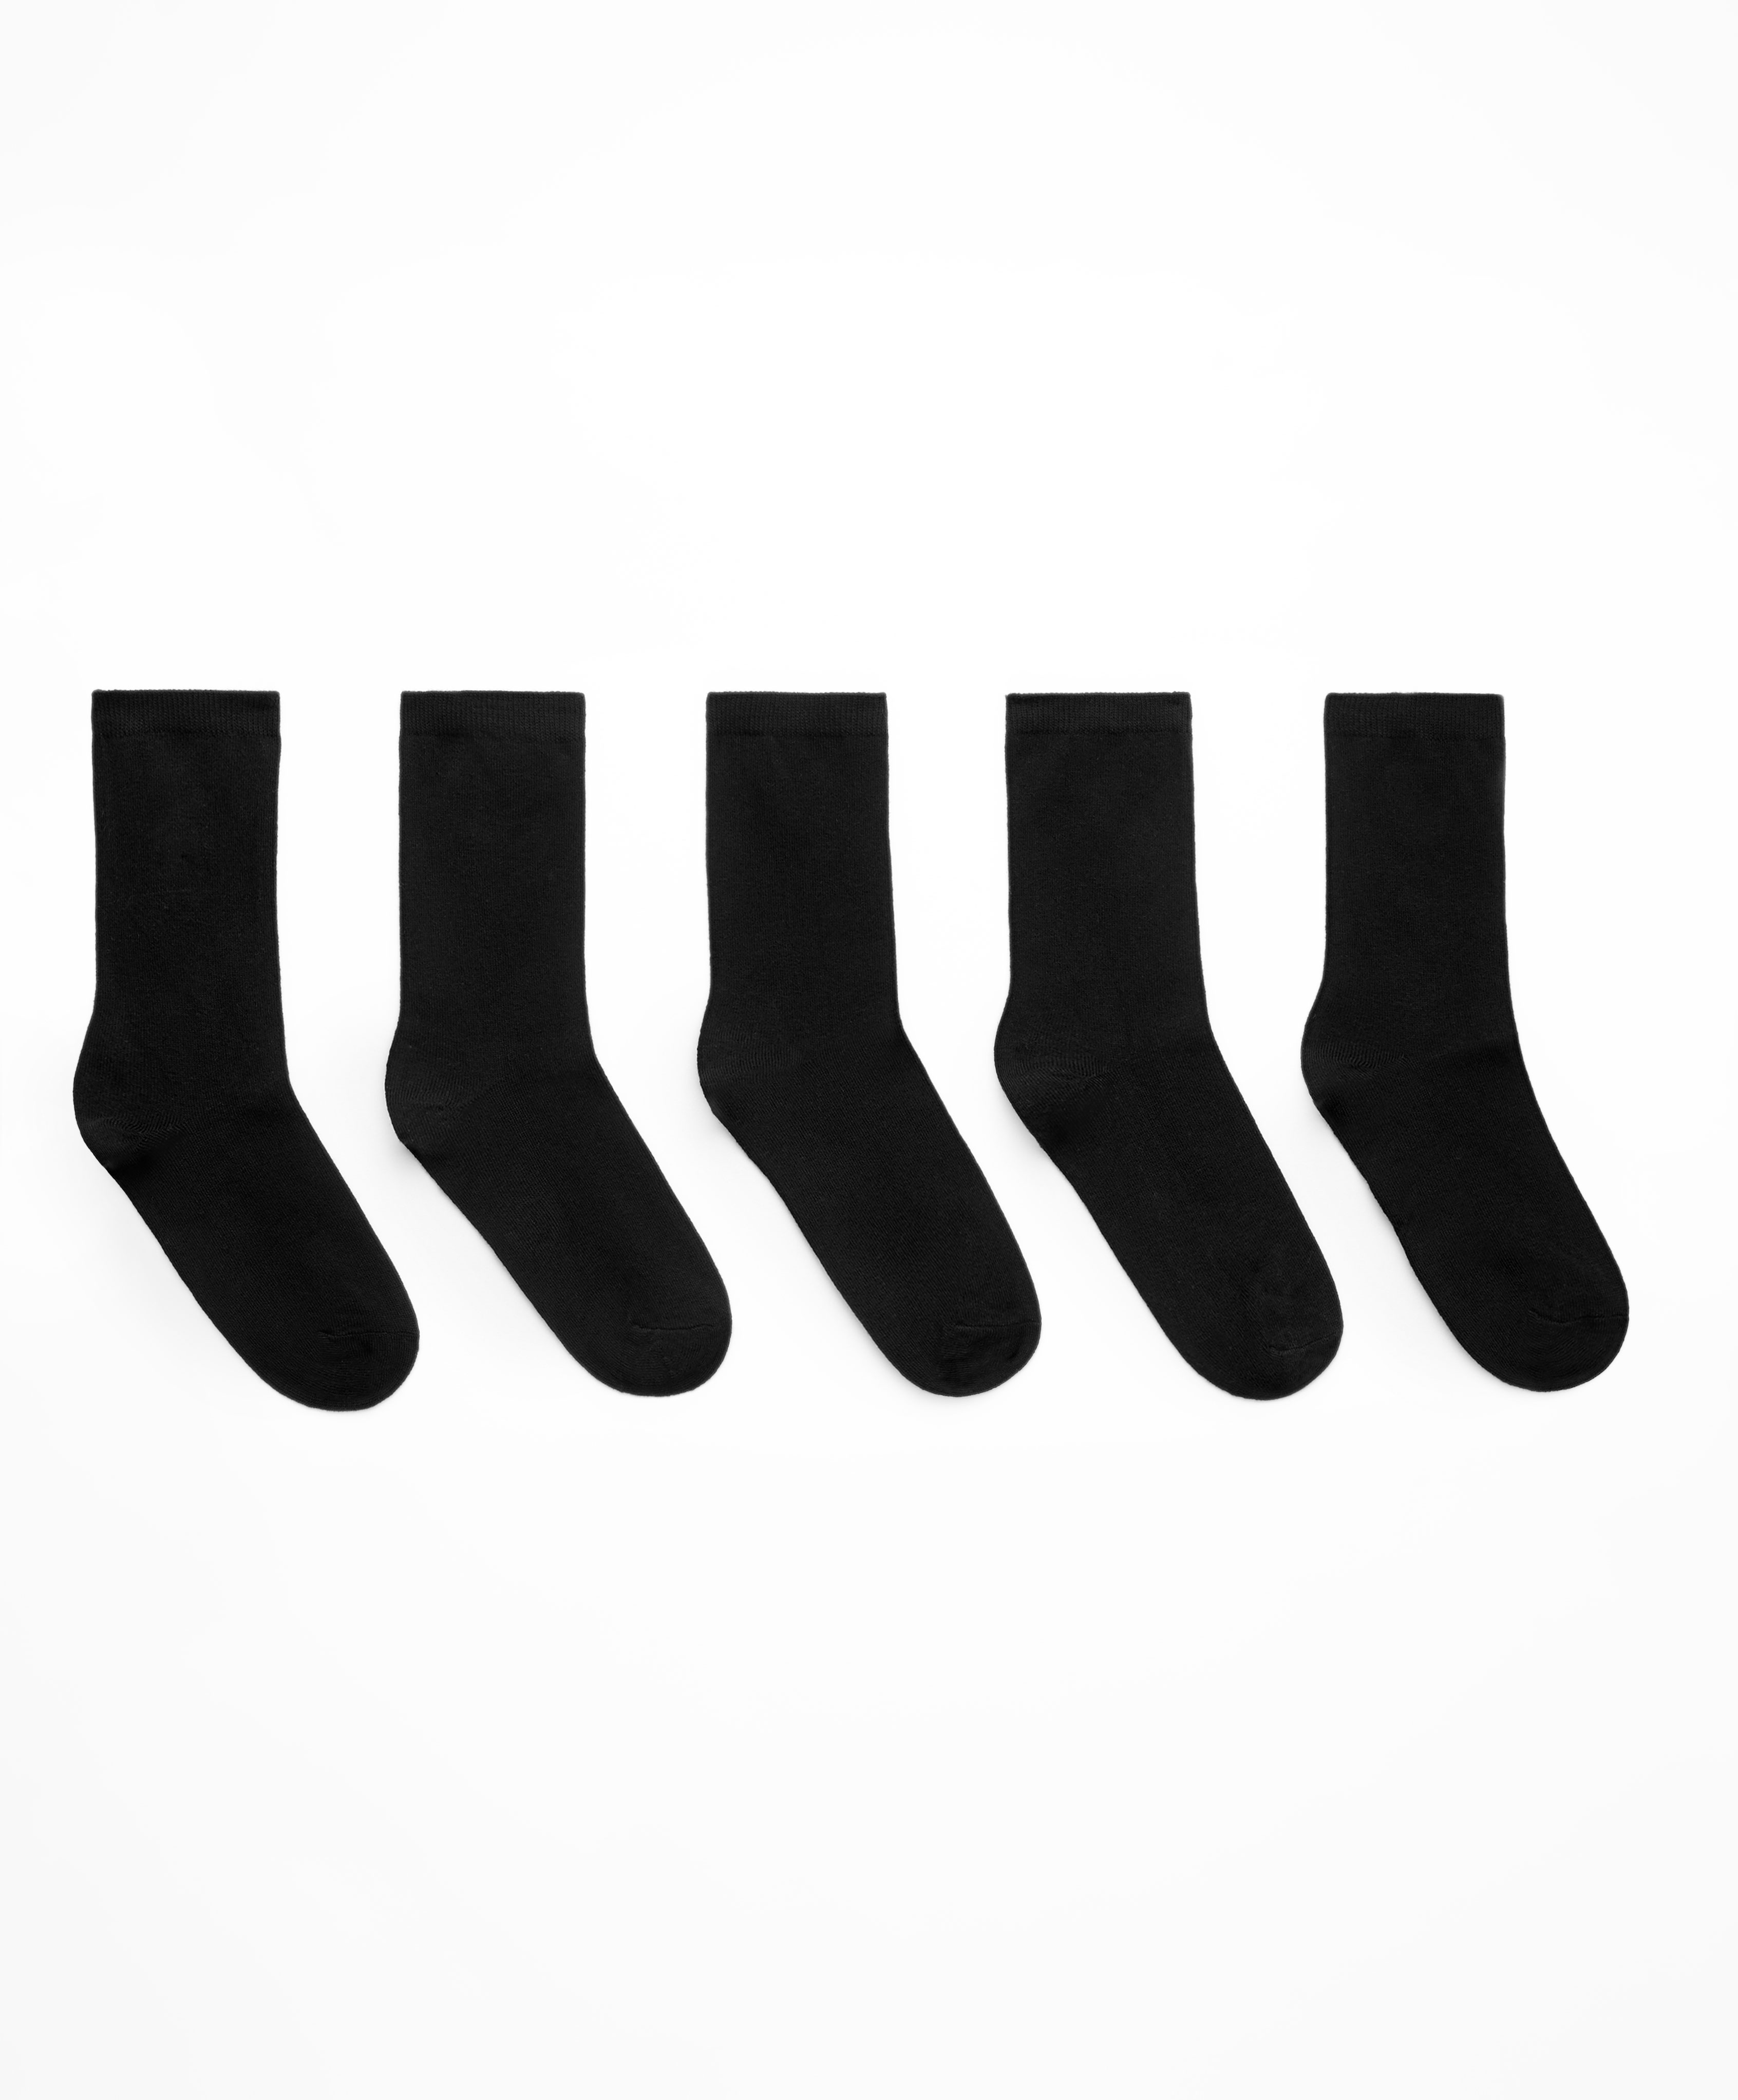 Une bonne paire de chaussettes (Humour) - chb70